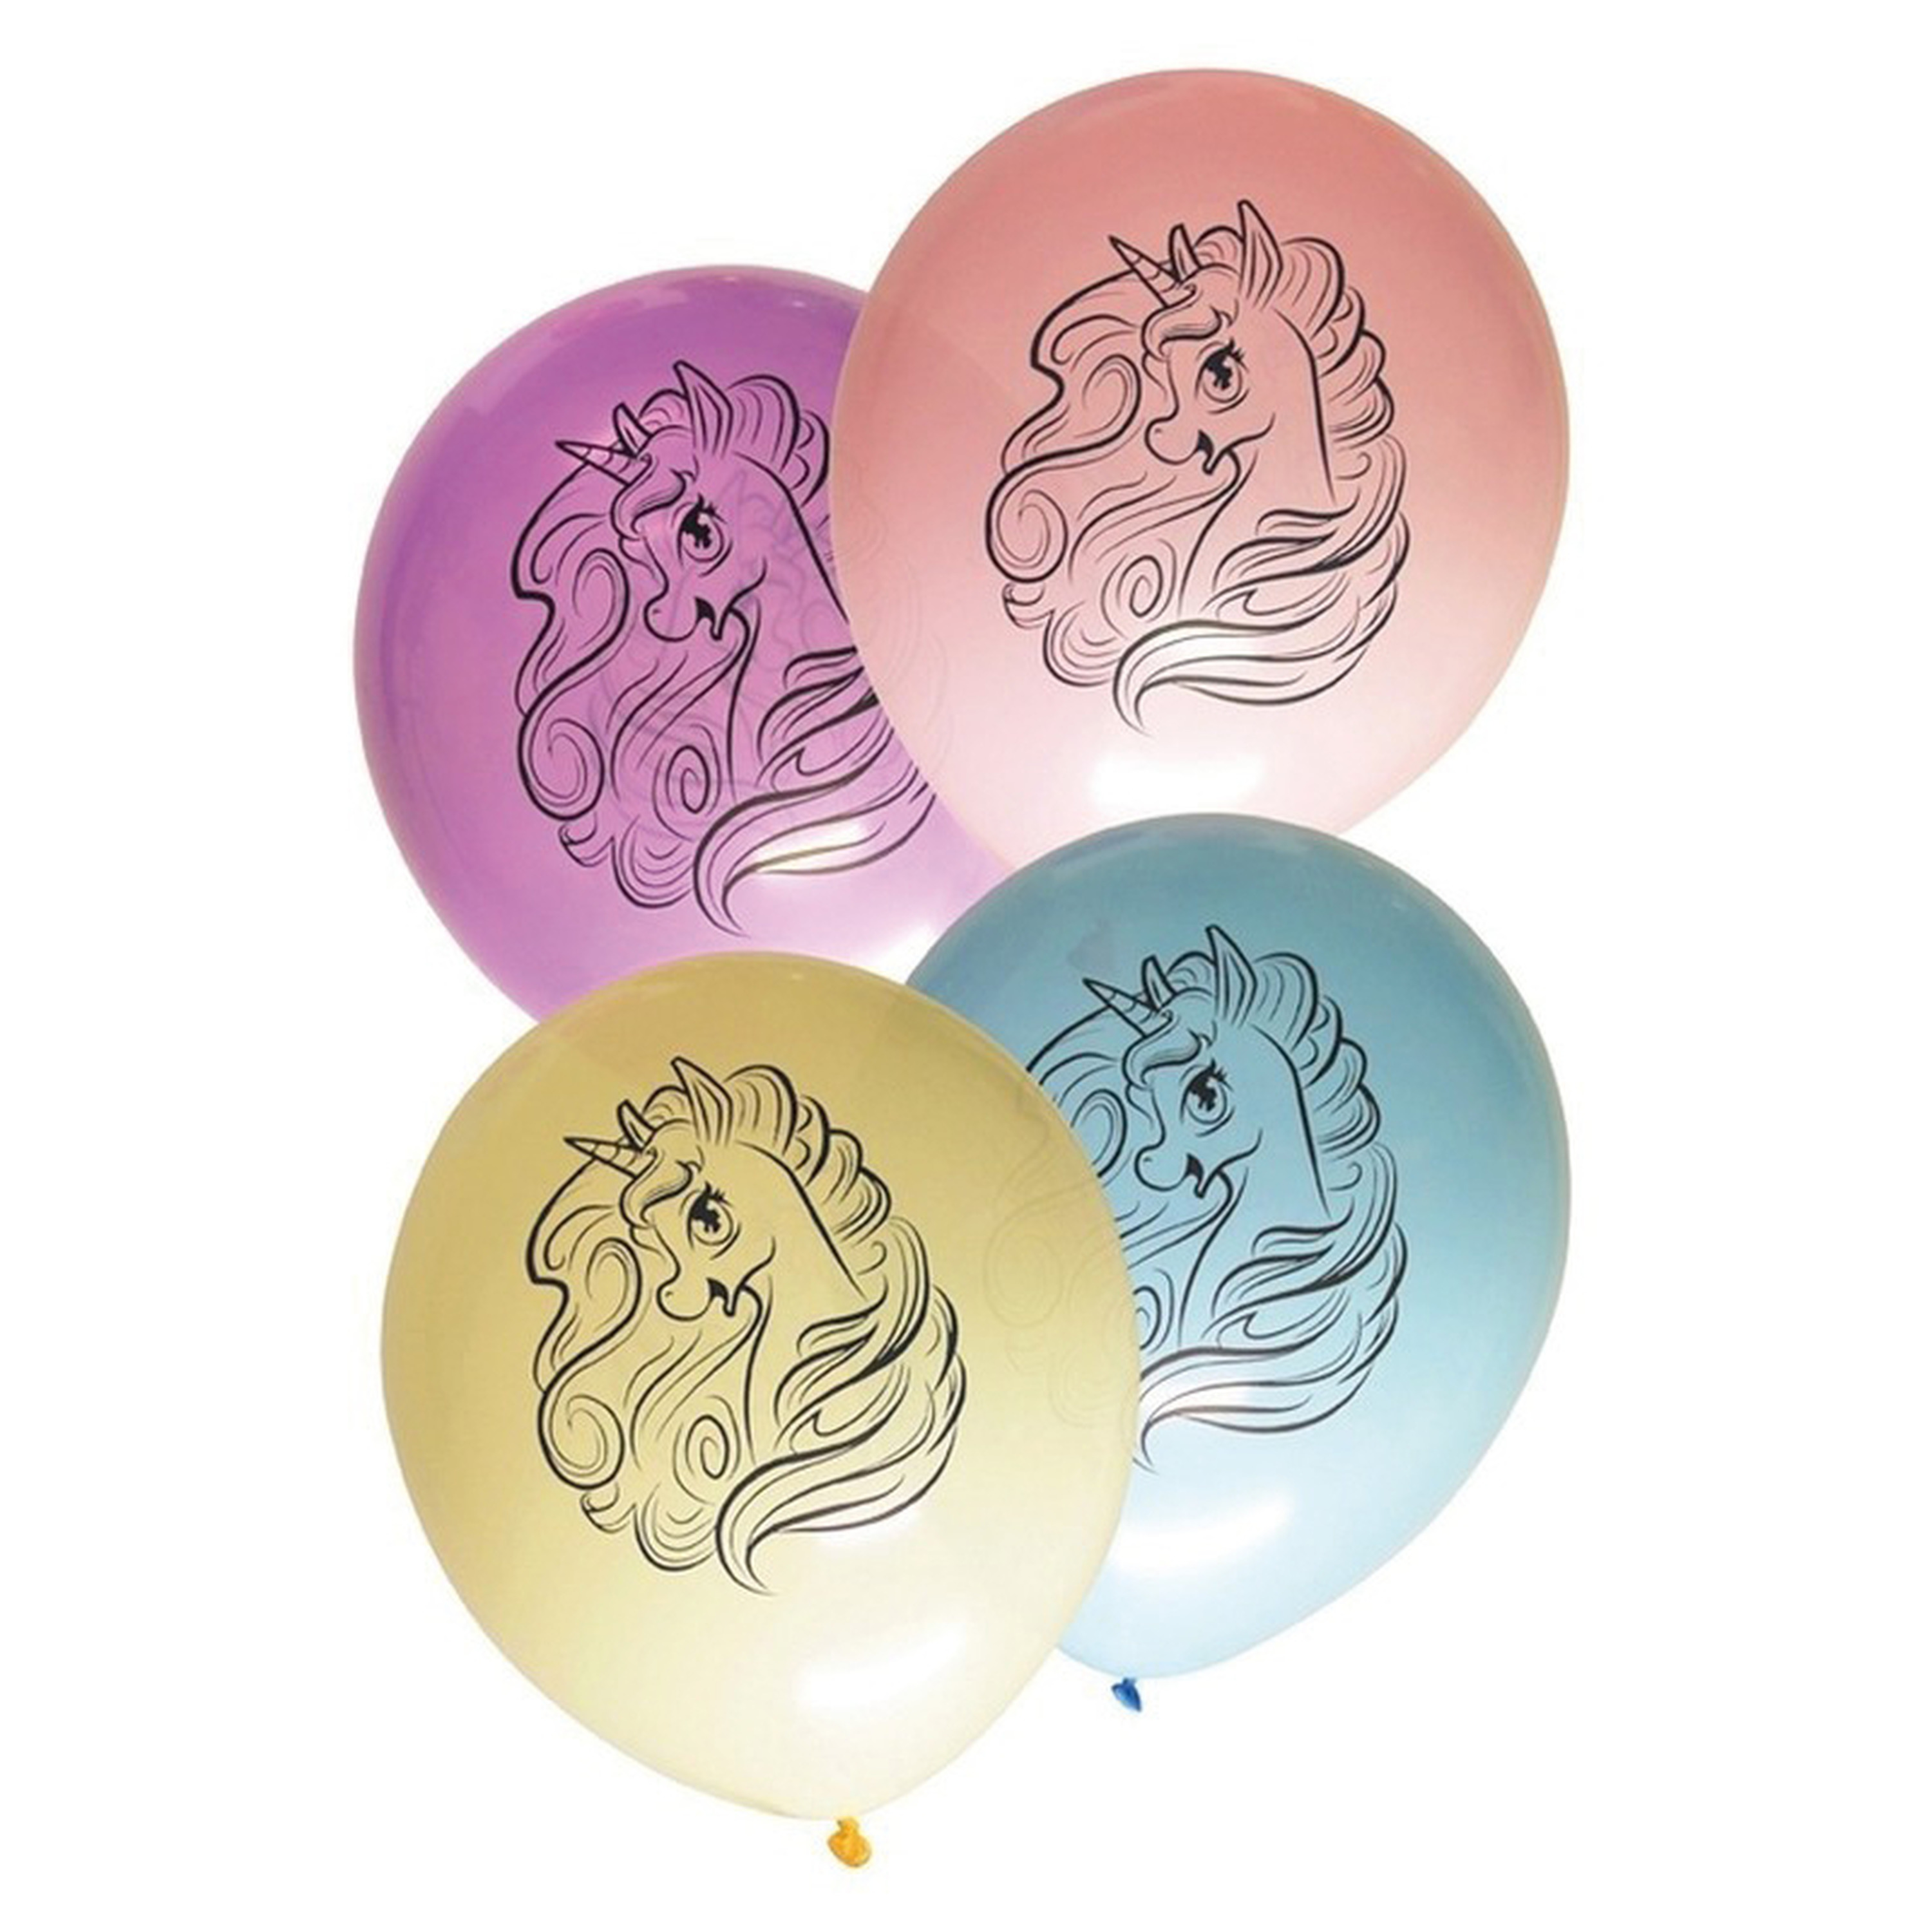 24x stuks Eenhoorn thema verjaardag feest ballonnen pastel kleuren